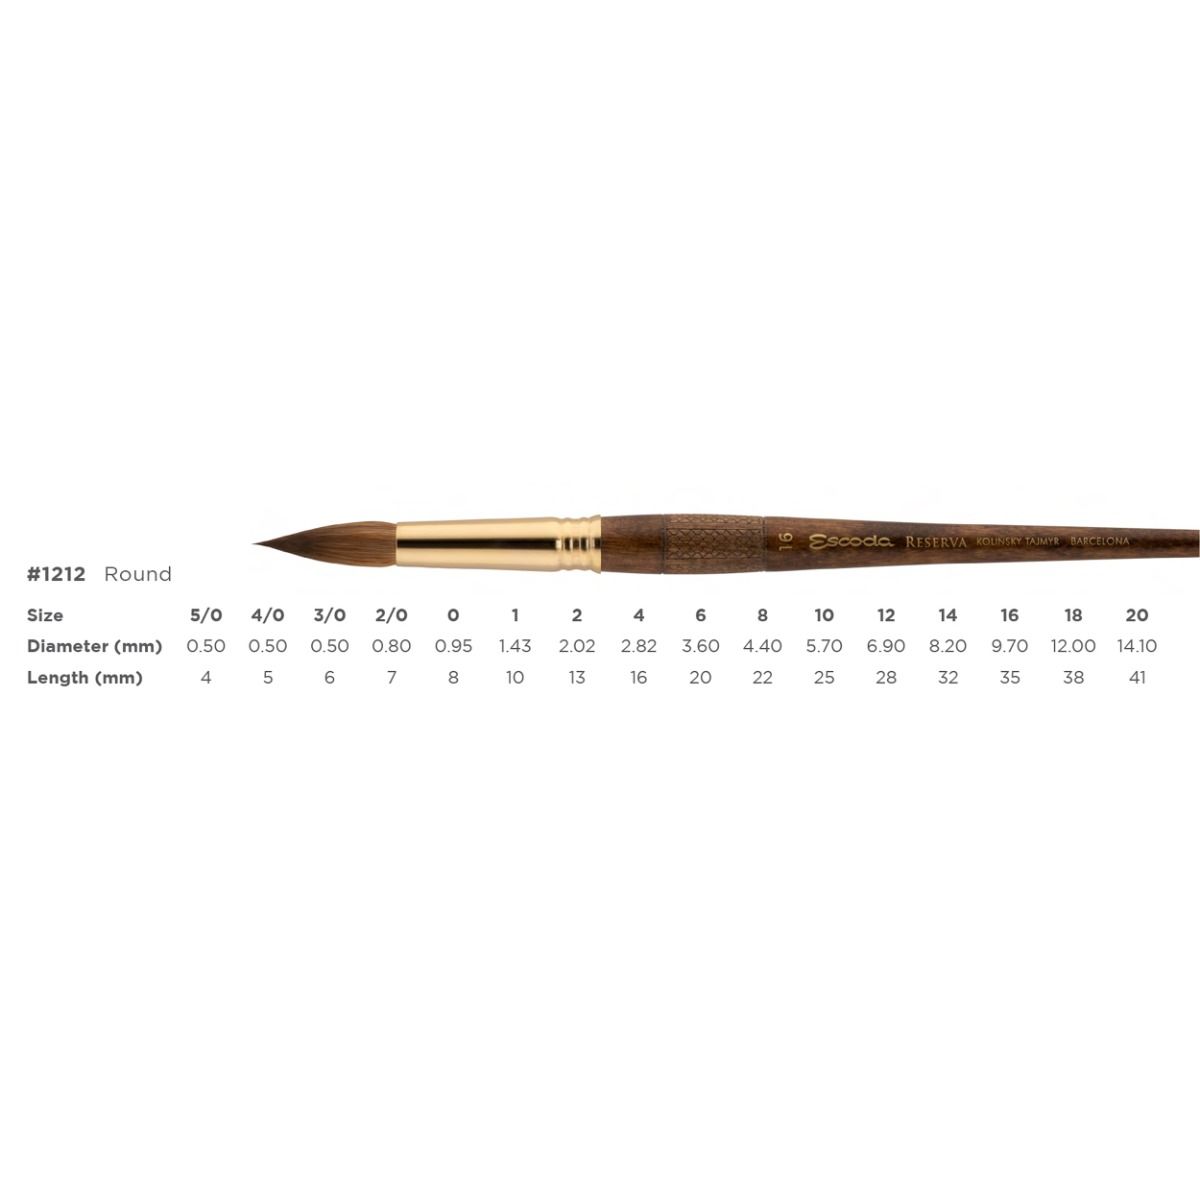 Short, balanced, wooden handles - Round series 1212